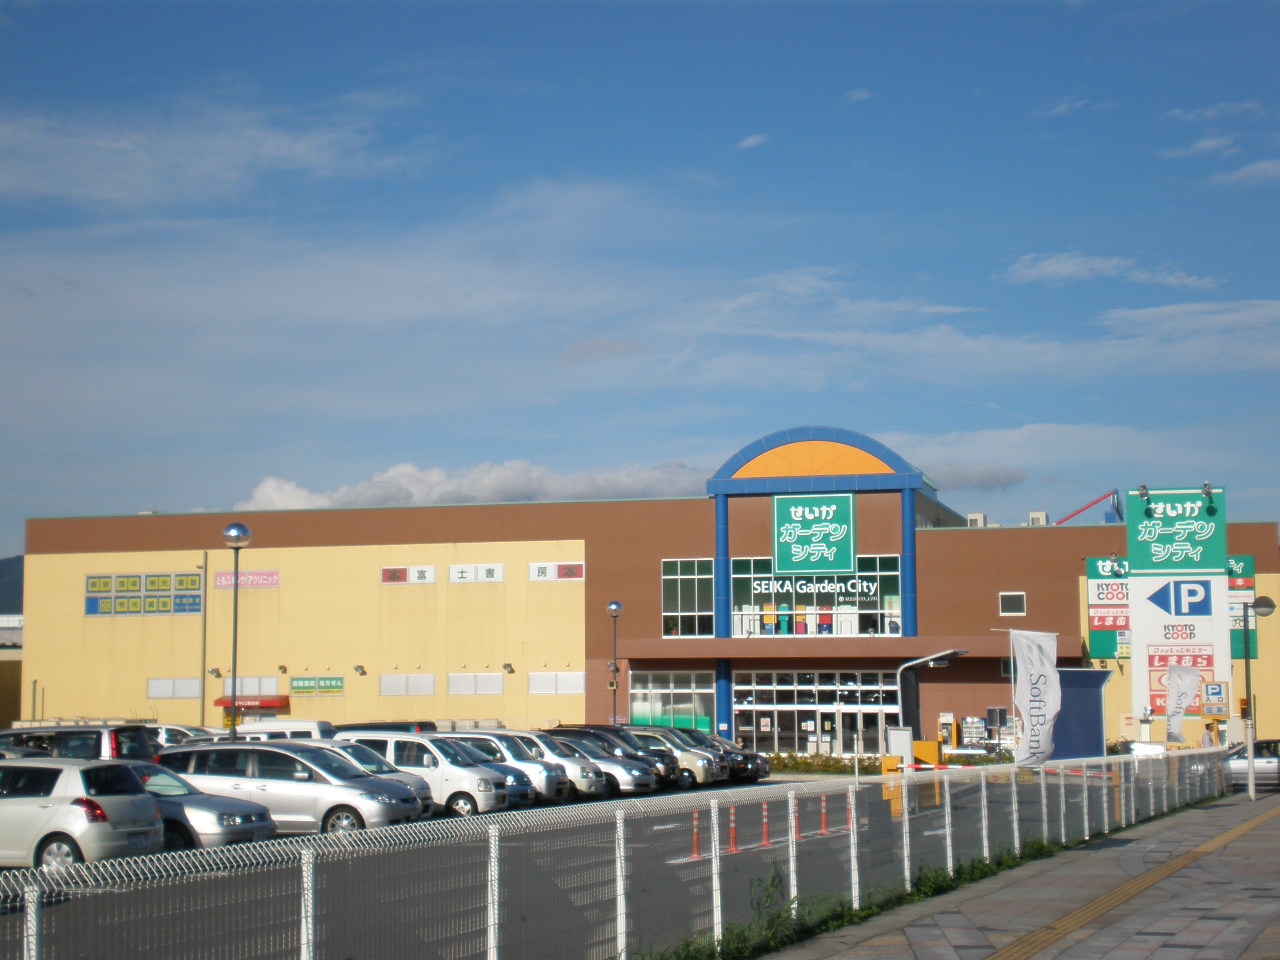 Shopping centre. 1255m until the outcome Garden City (shopping center)